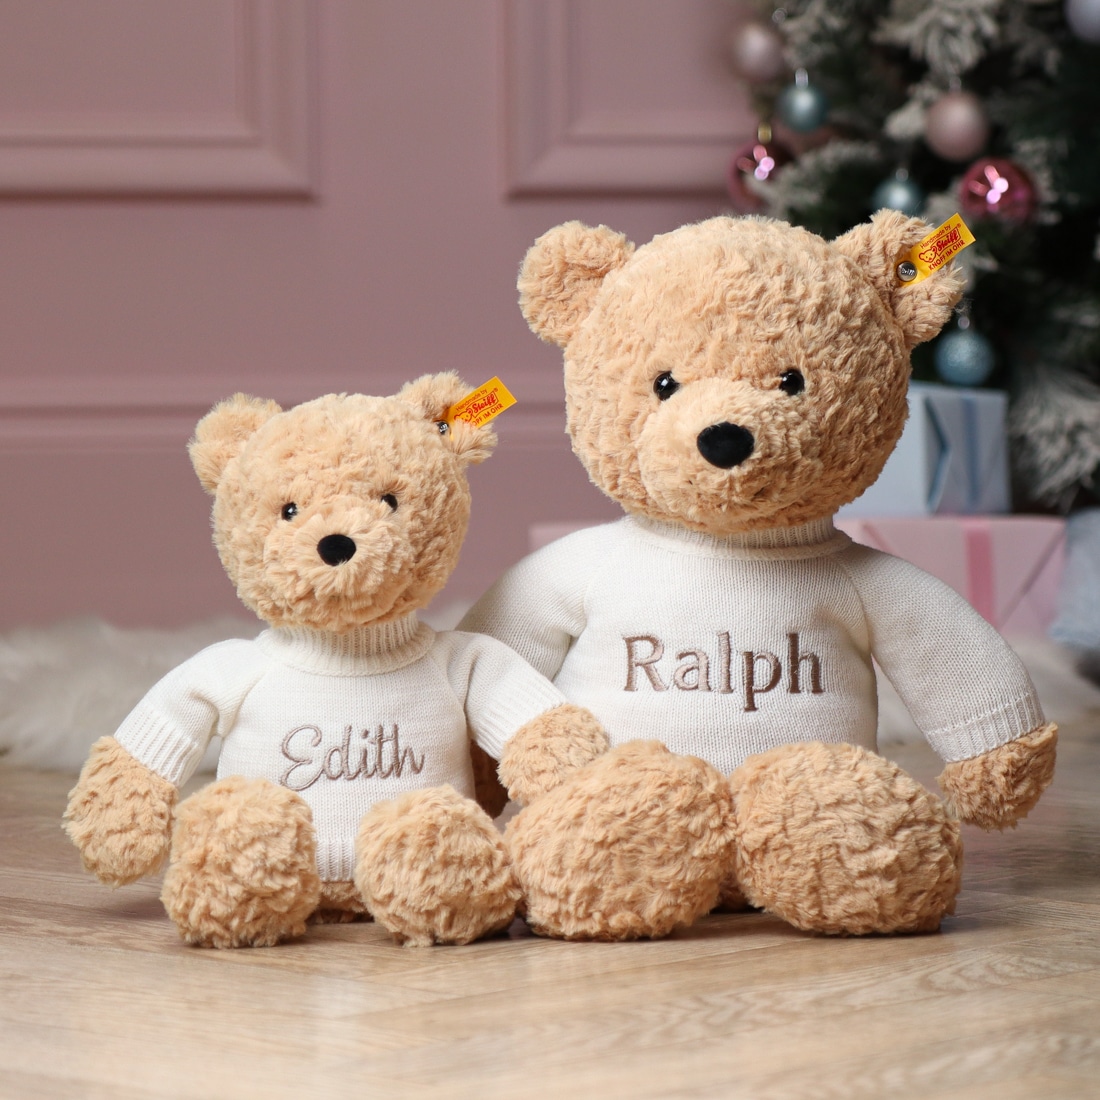 small Edith teddy bear and large Ralph teddy bear